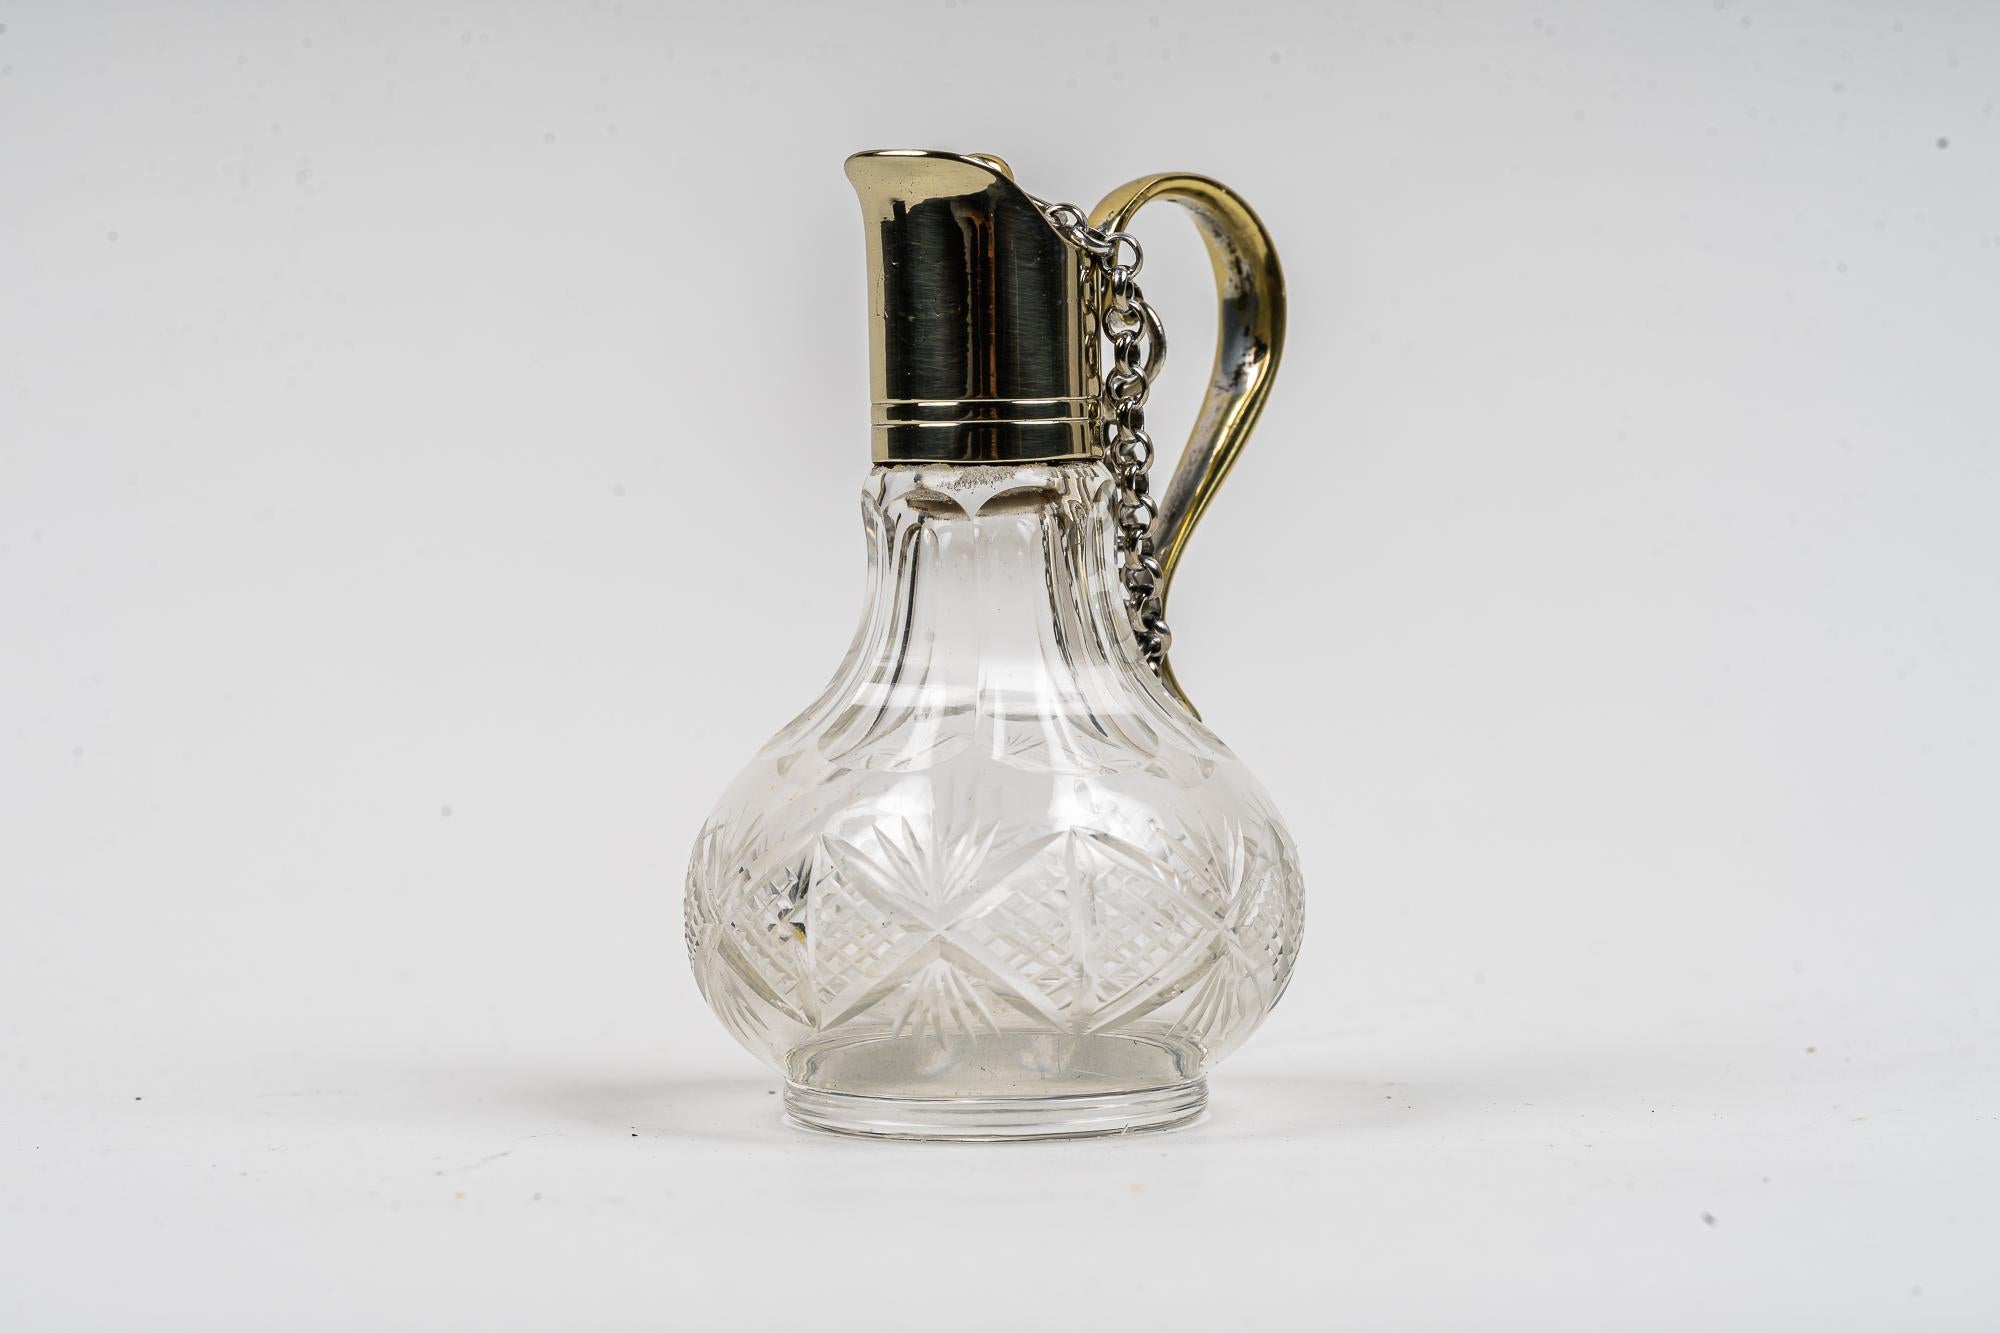 Art Deco Essigflasche Wien um 1920er Jahre
Alpaka poliert und Ofen - emailliert 
Geschliffenes Glas.